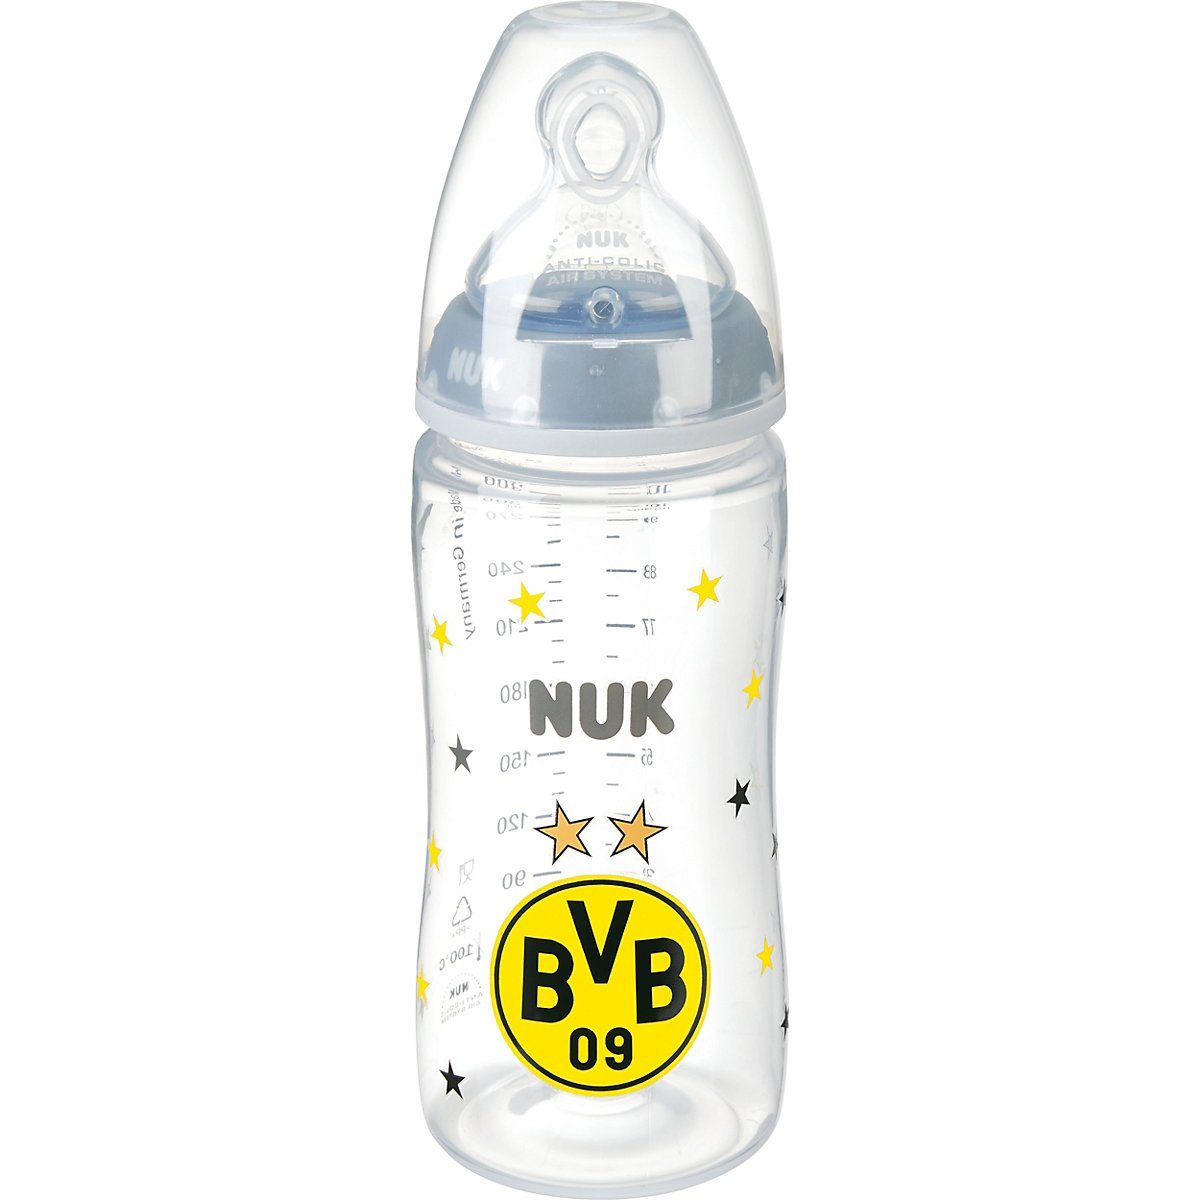 Kinder Babyernährung Borussia Dortmund Babyflasche BVB-Babytrinkflasche